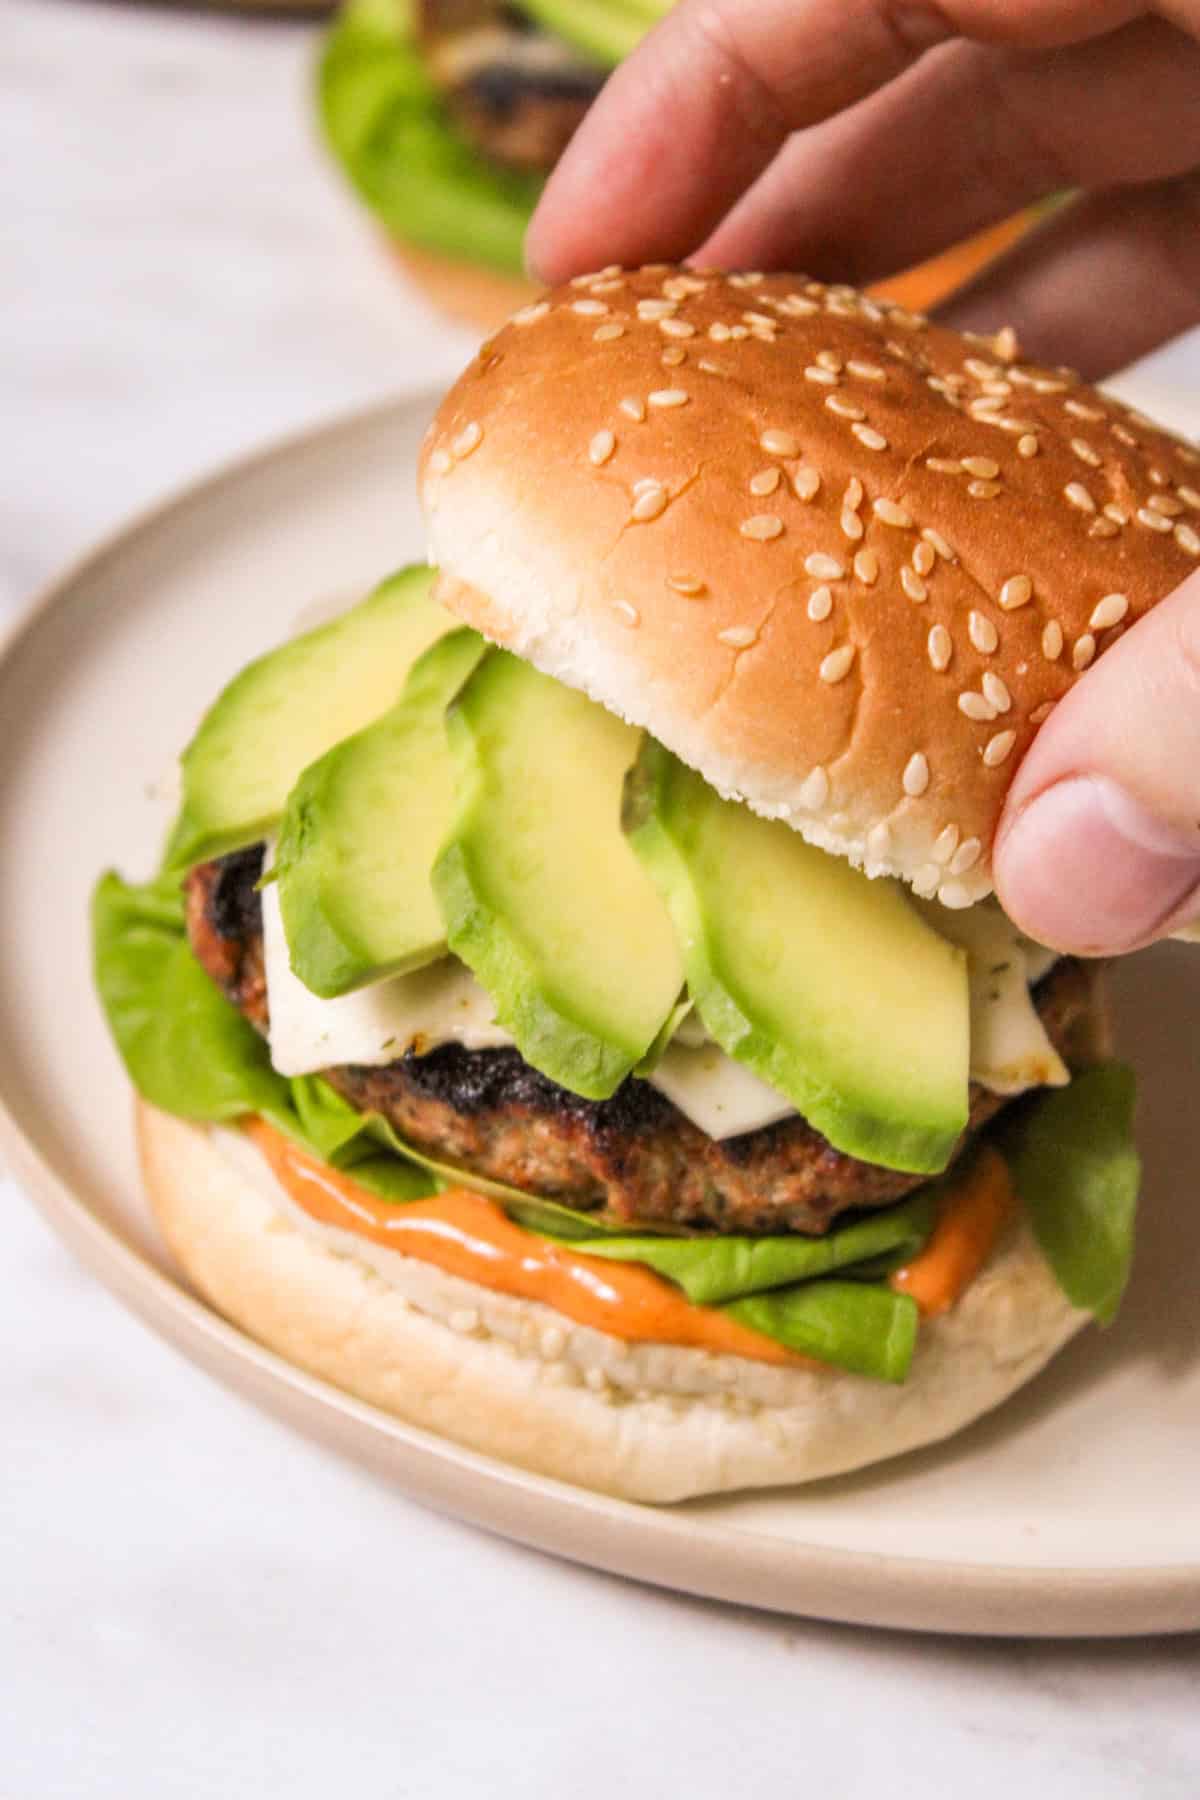 hand placing a burger bun top onto a burger topped with sliced avocado